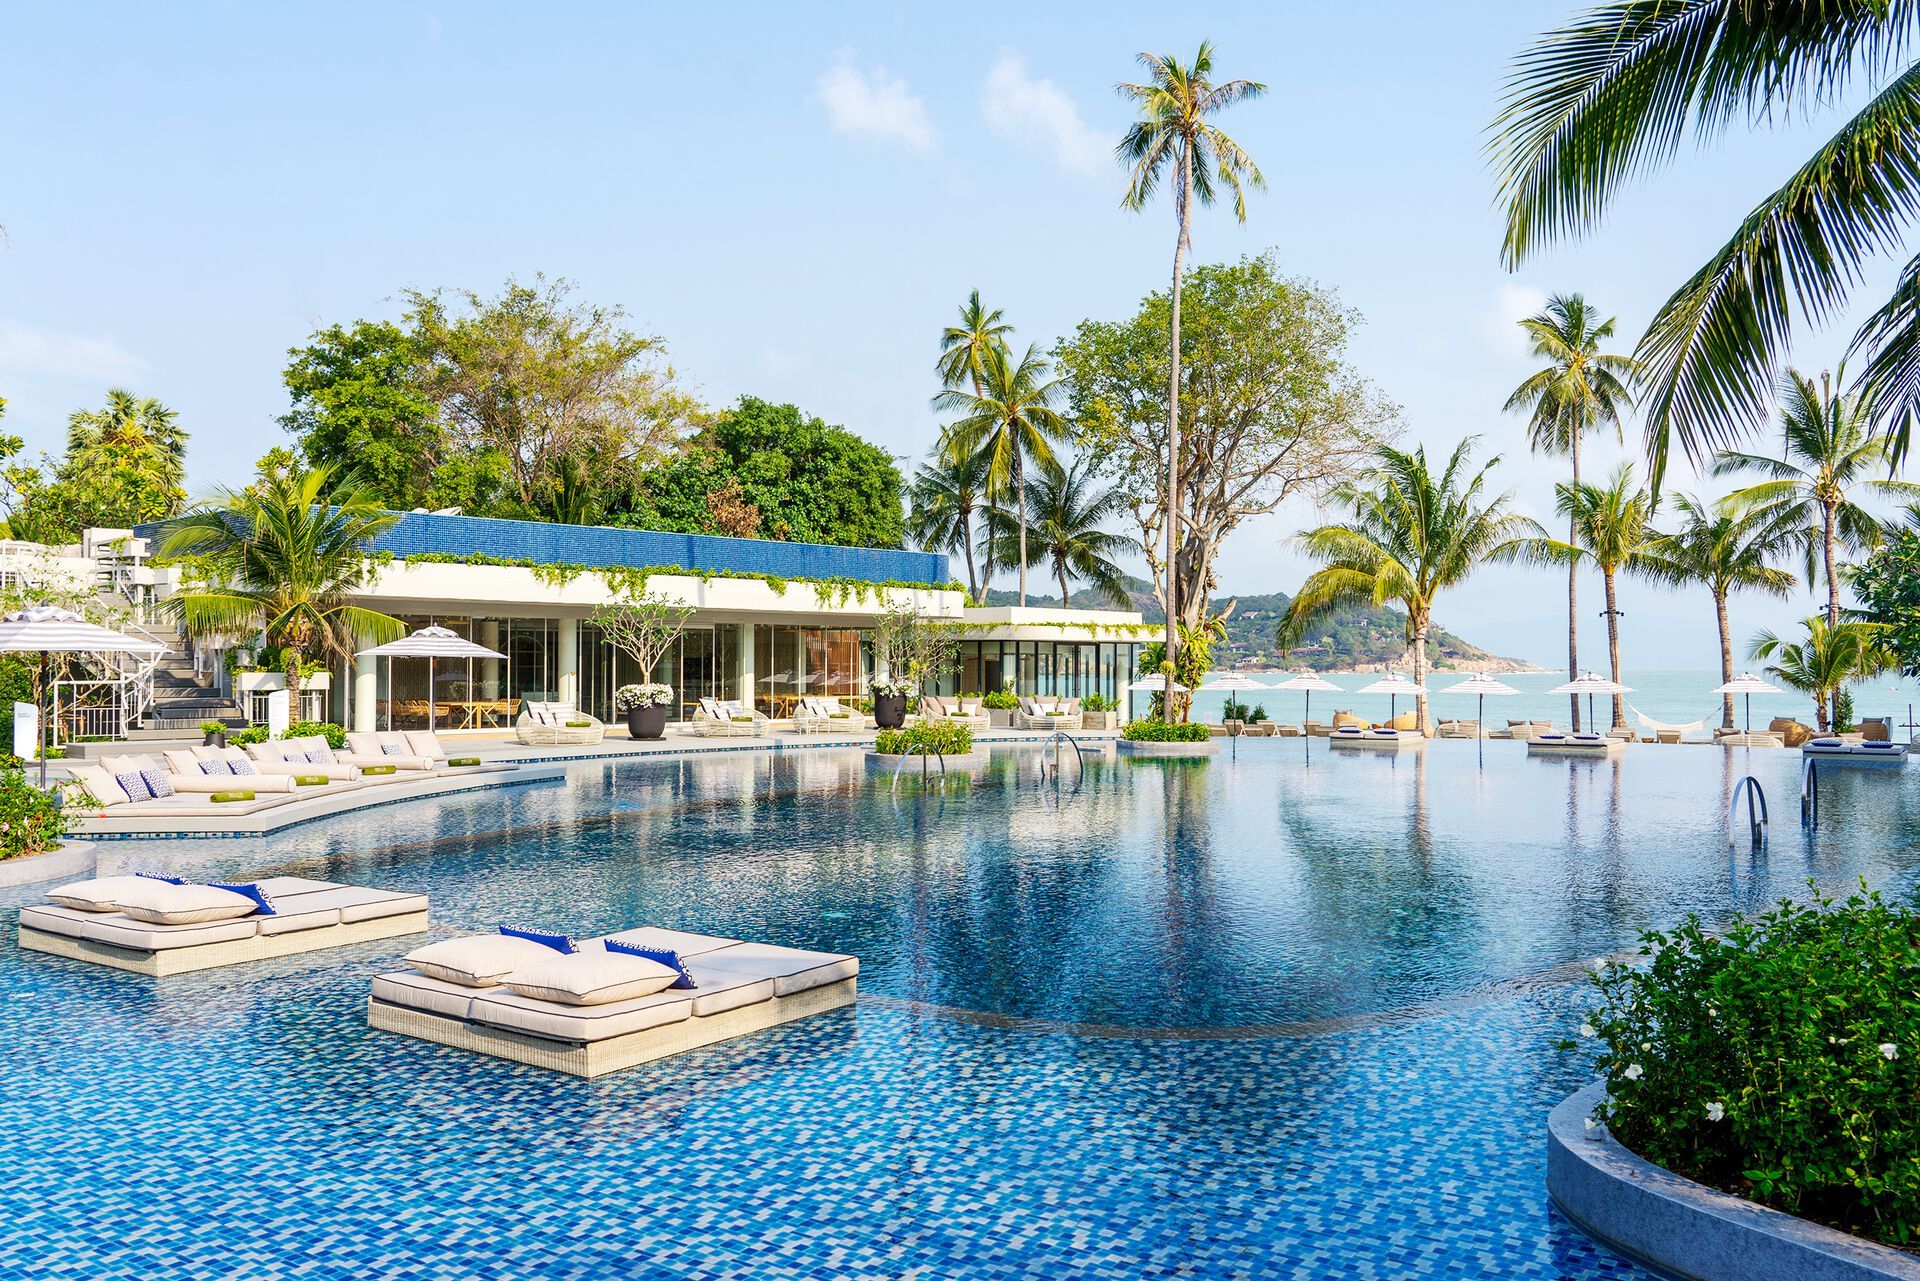 Thaïlande - Koh Samui - Hôtel Melia Koh Samui Beach Resort 5*